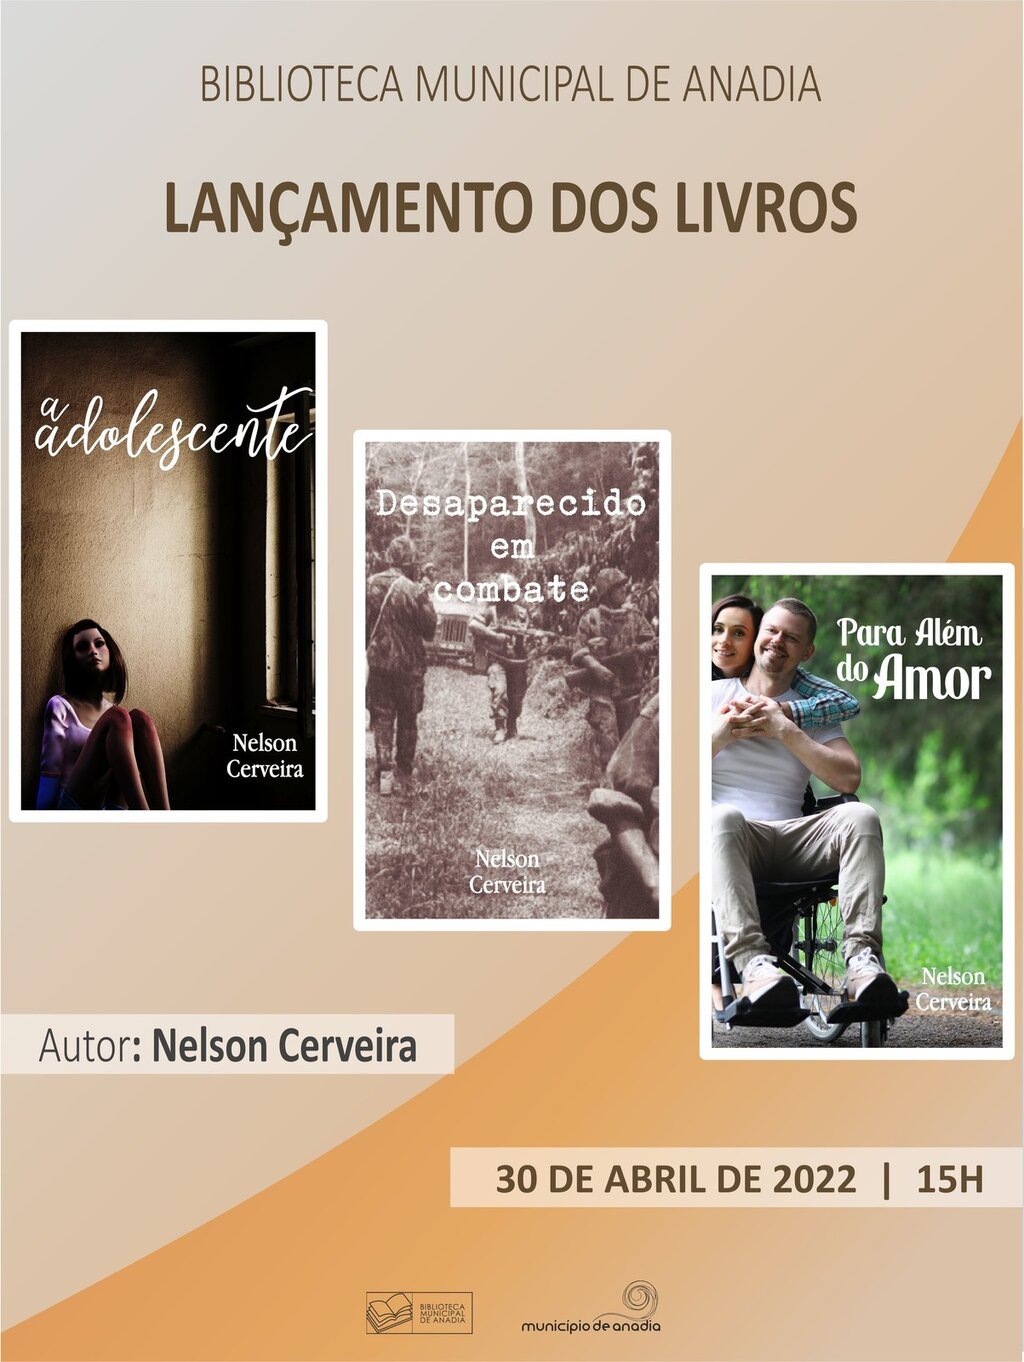 Lançamento dos livros do autor Nelson Cerveira